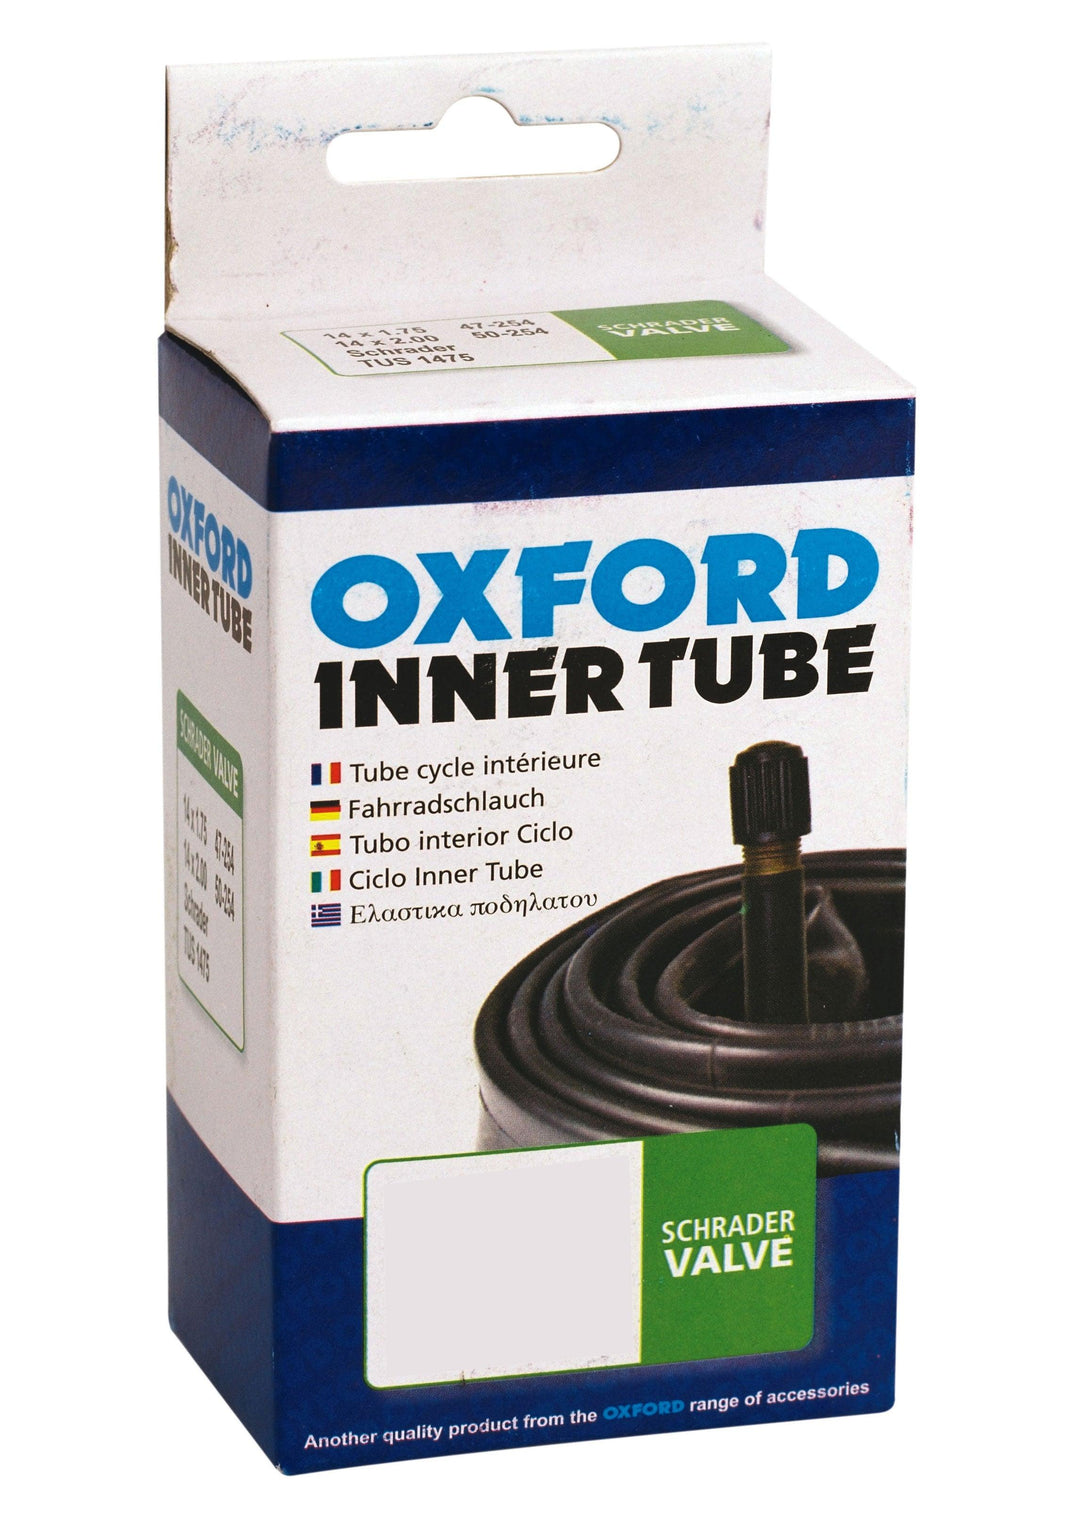 Oxford Inner Tube - 12.5" x 1.75 - Angled Schrader Valve - Towsure